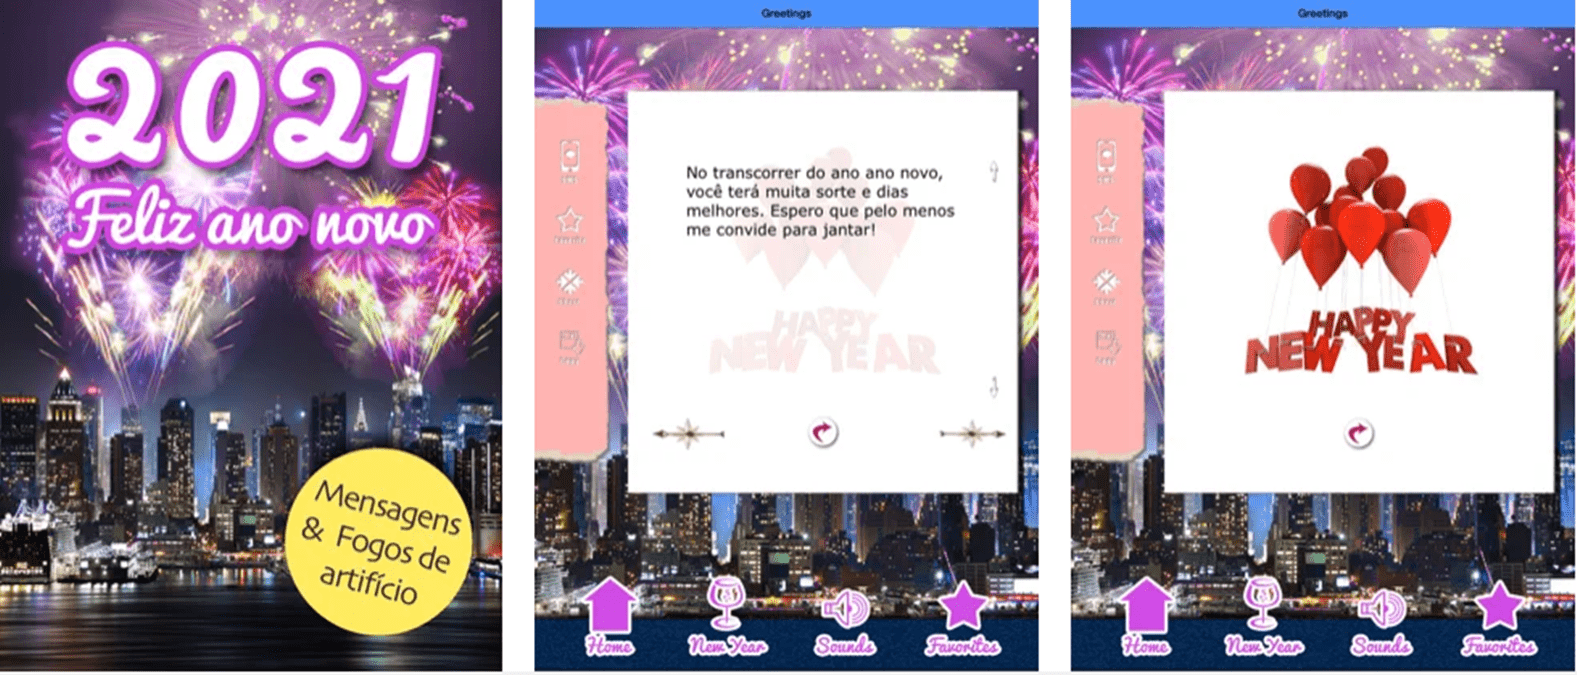 Imagem capturada de aplicativo de mensagem de ano novo